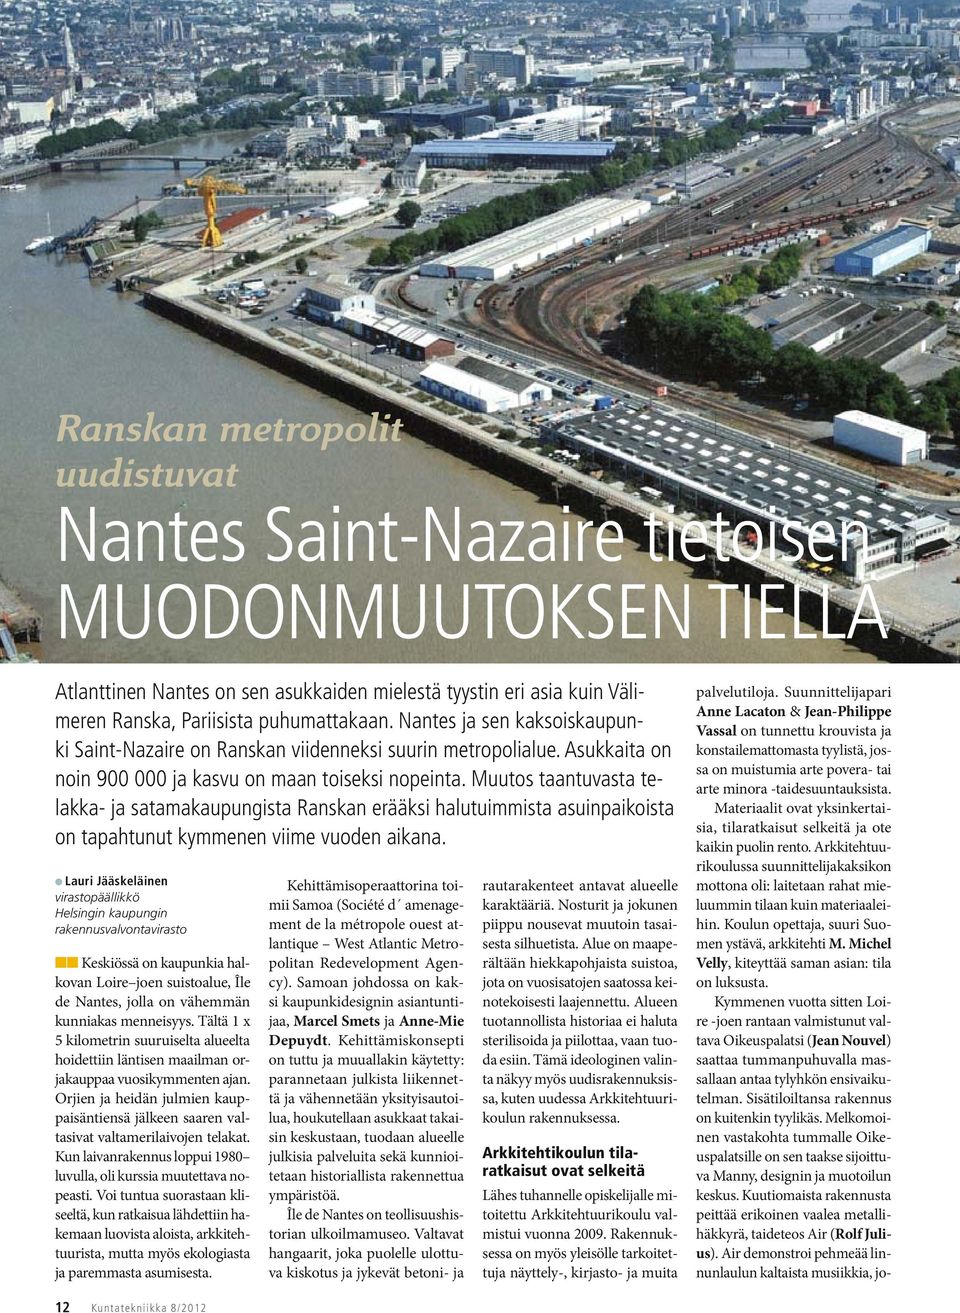 Muutos taantuvasta telakka- ja satamakaupungista Ranskan erääksi halutuimmista asuinpaikoista on tapahtunut kymmenen viime vuoden aikana.